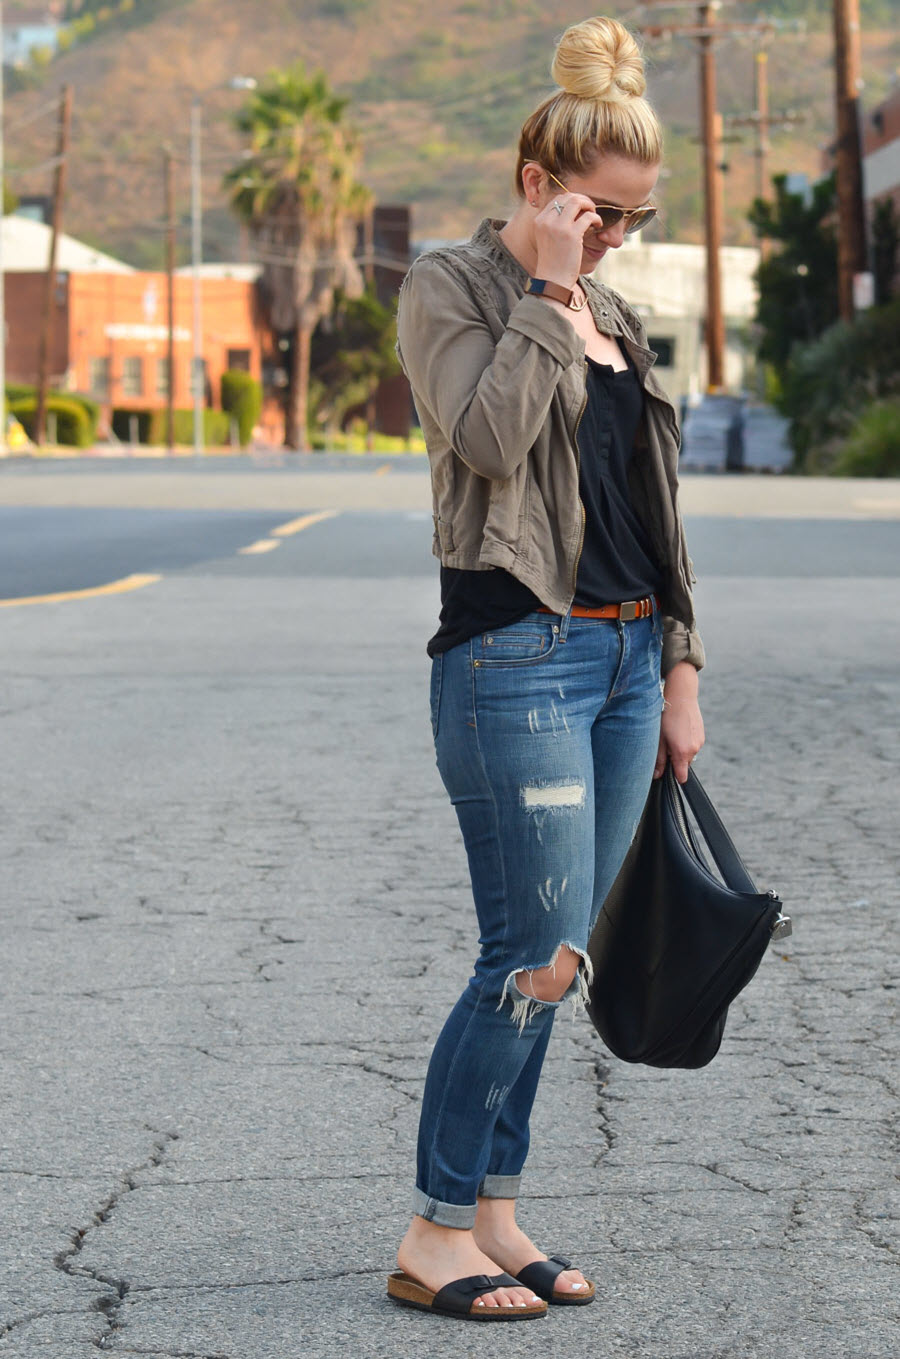 Birkenstocks + Jeans - Chic Birkenstocks Outfit Ideas for Women-